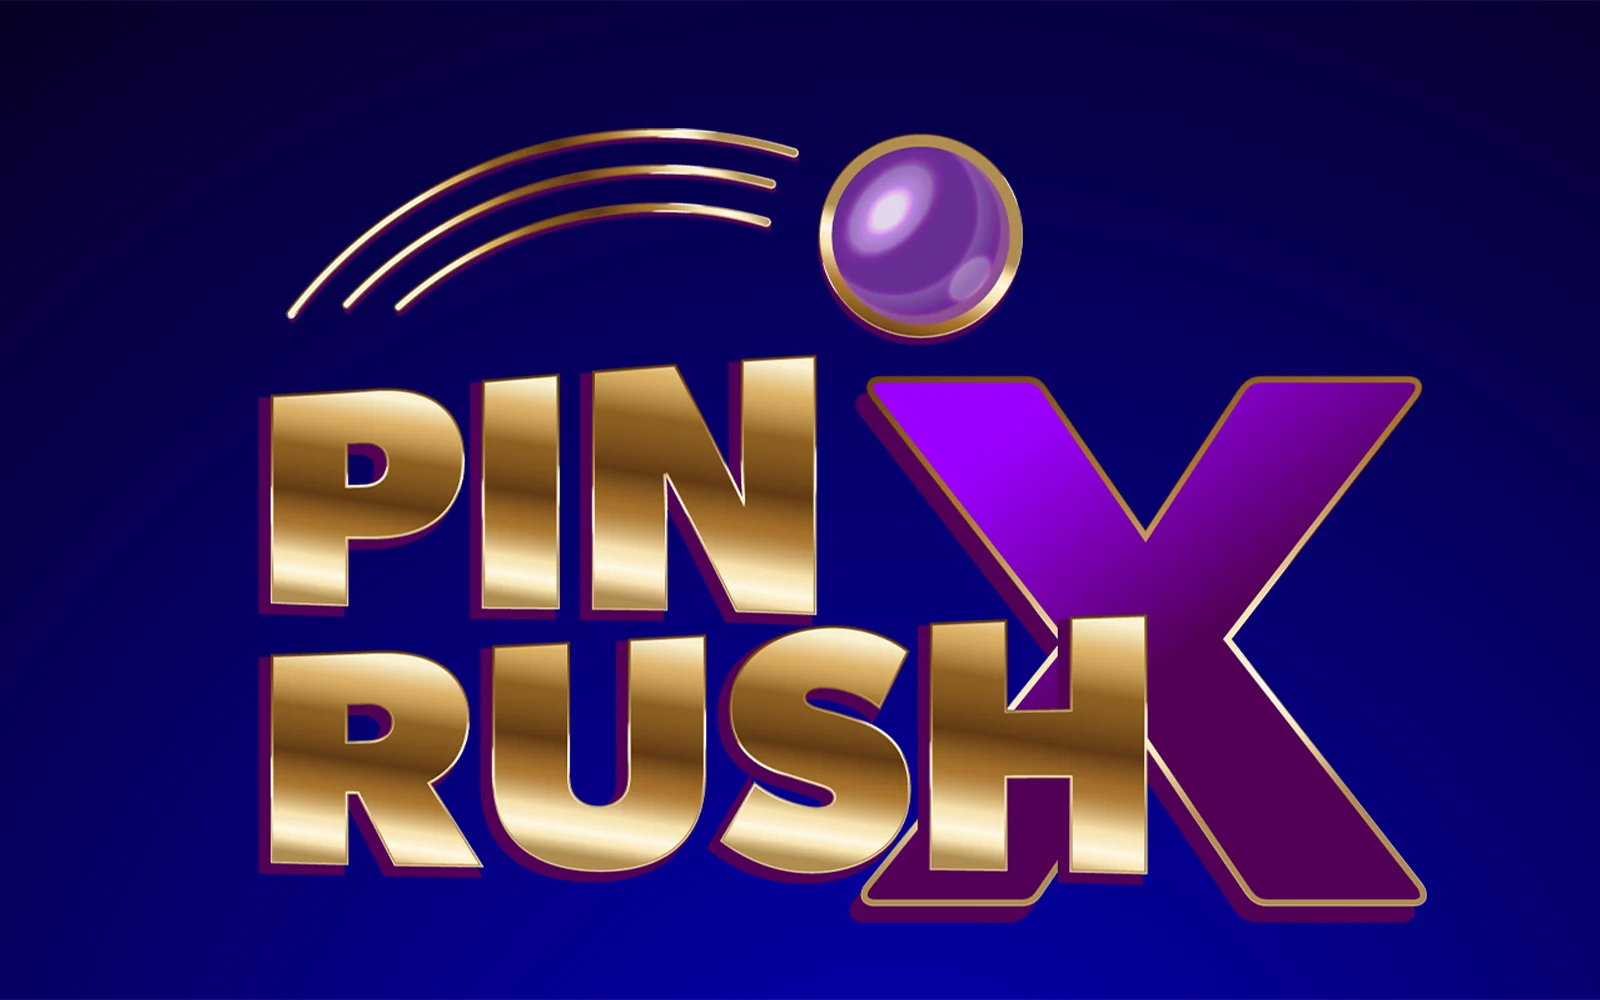 Play Pin Rush X on Starcasino.be online casino